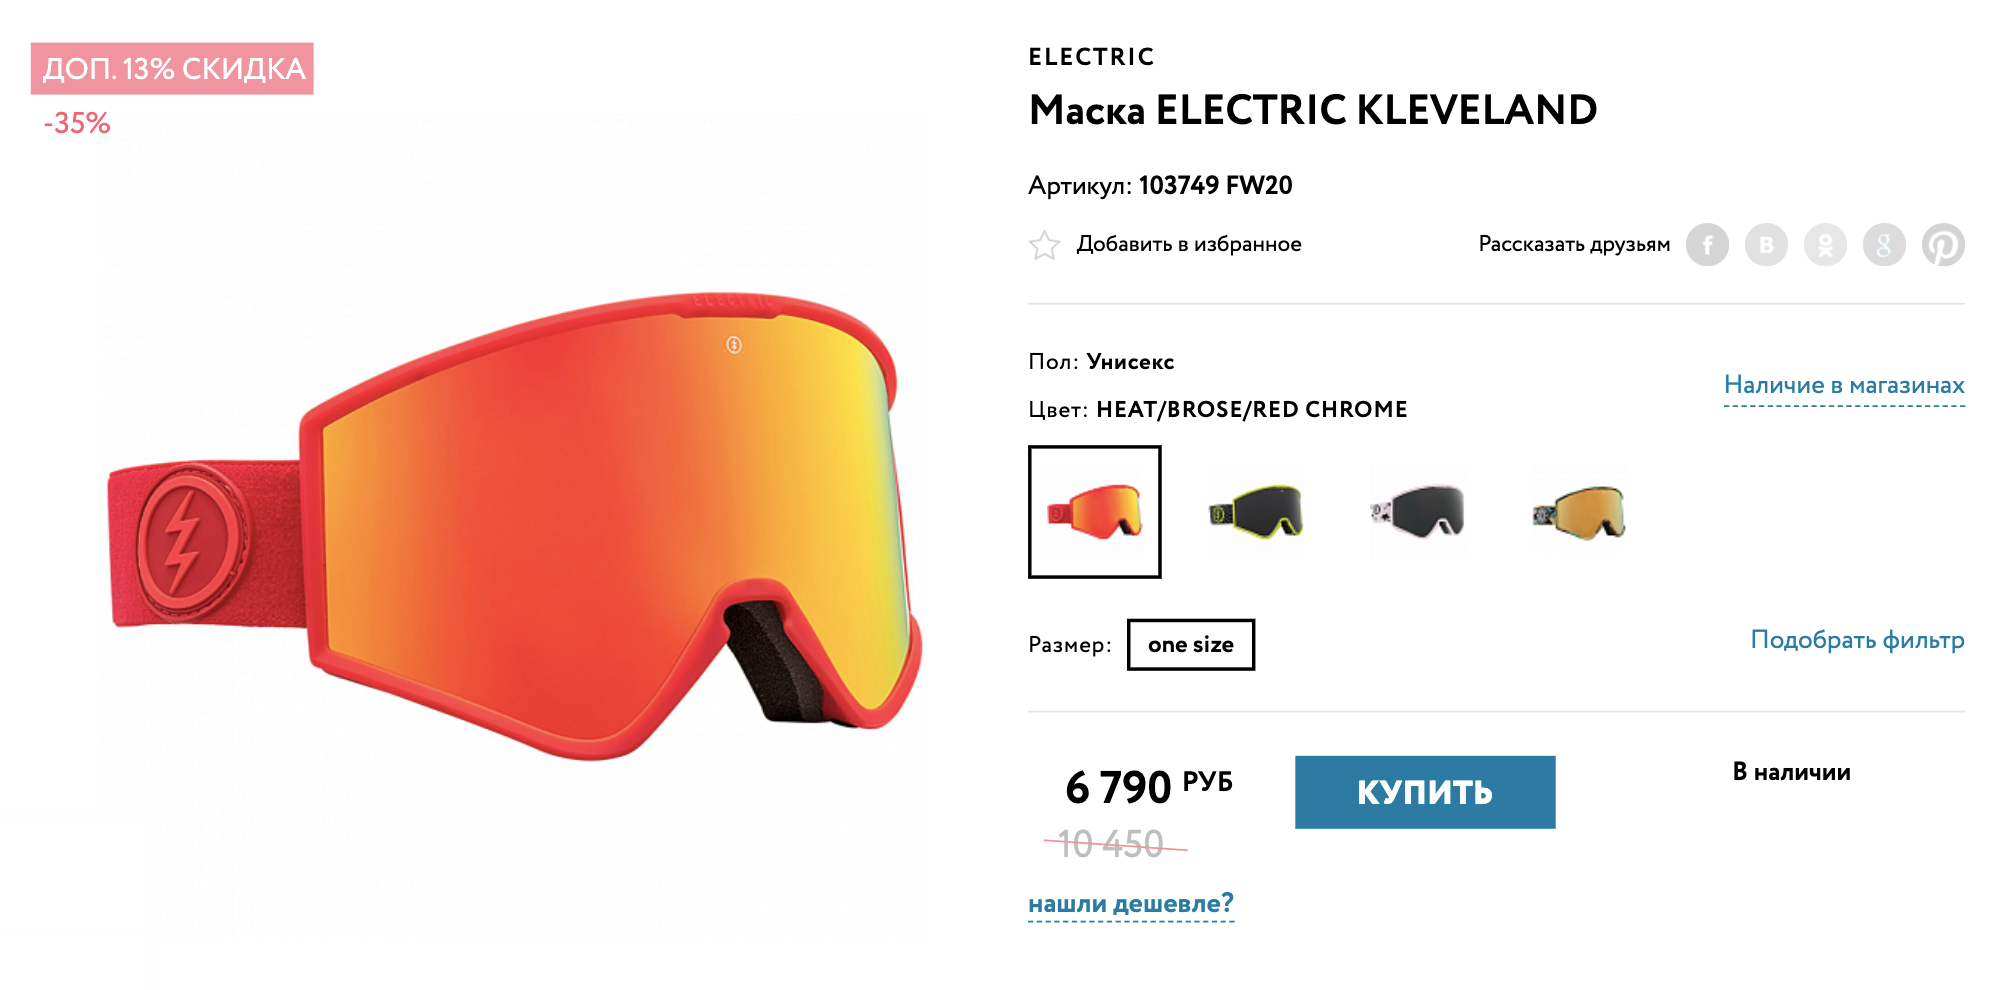 Из хороших бюджетных вариантов могу порекомендовать маску Electric Kleveland: у нее широкий угол обзора, линза приспосабливается к условиям освещения, есть бонусная линза в комплекте. Цена — 6790 ₽. Источник: traektoria.ru